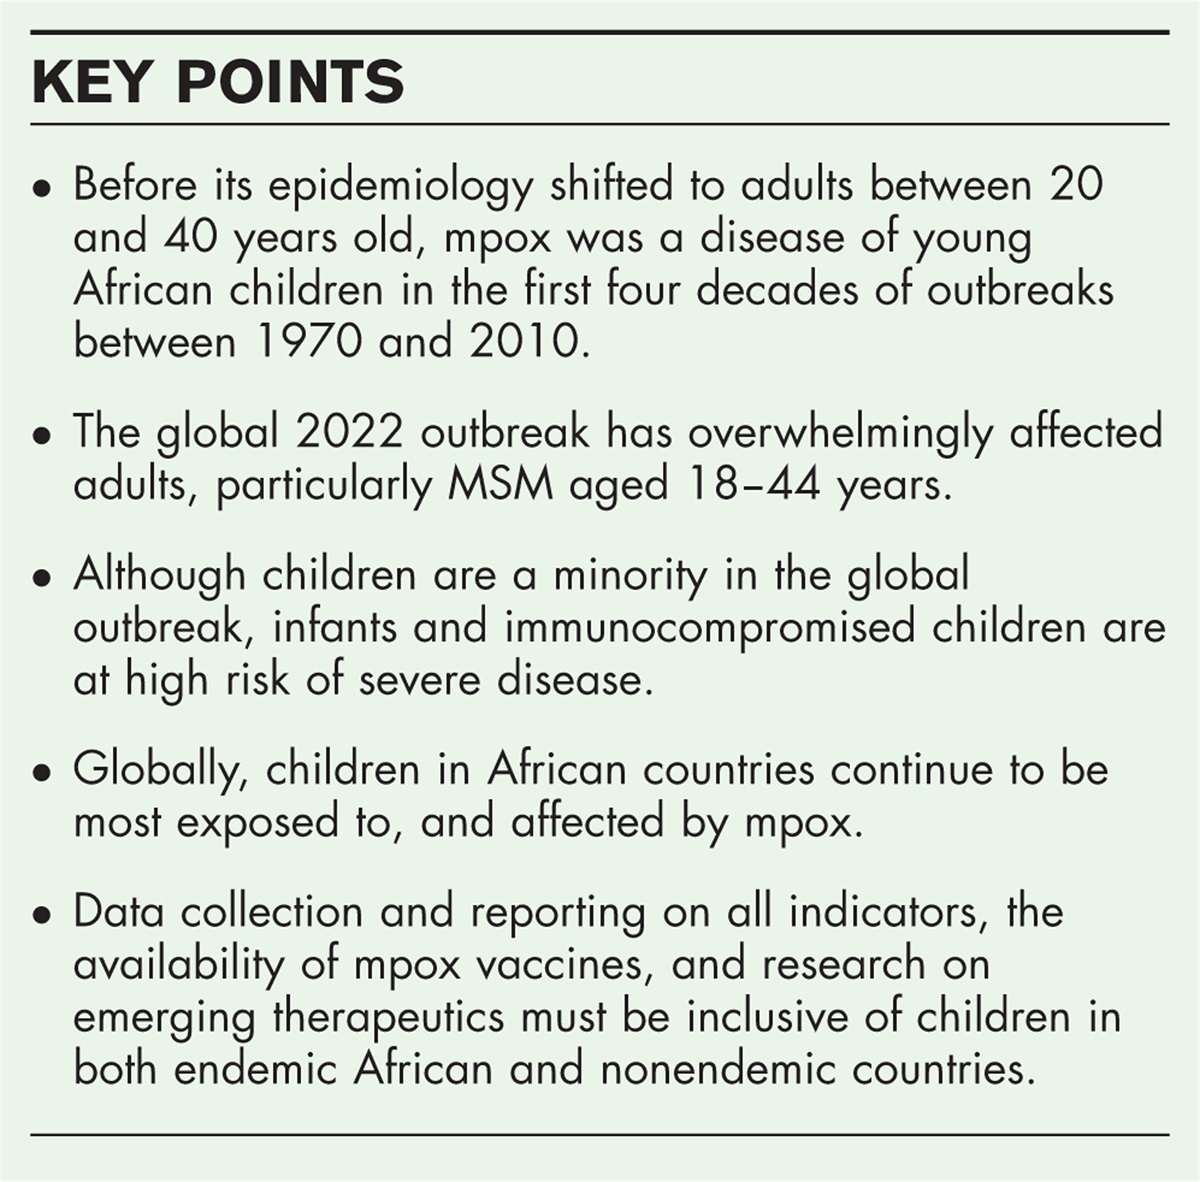 A global update of mpox (monkeypox) in children